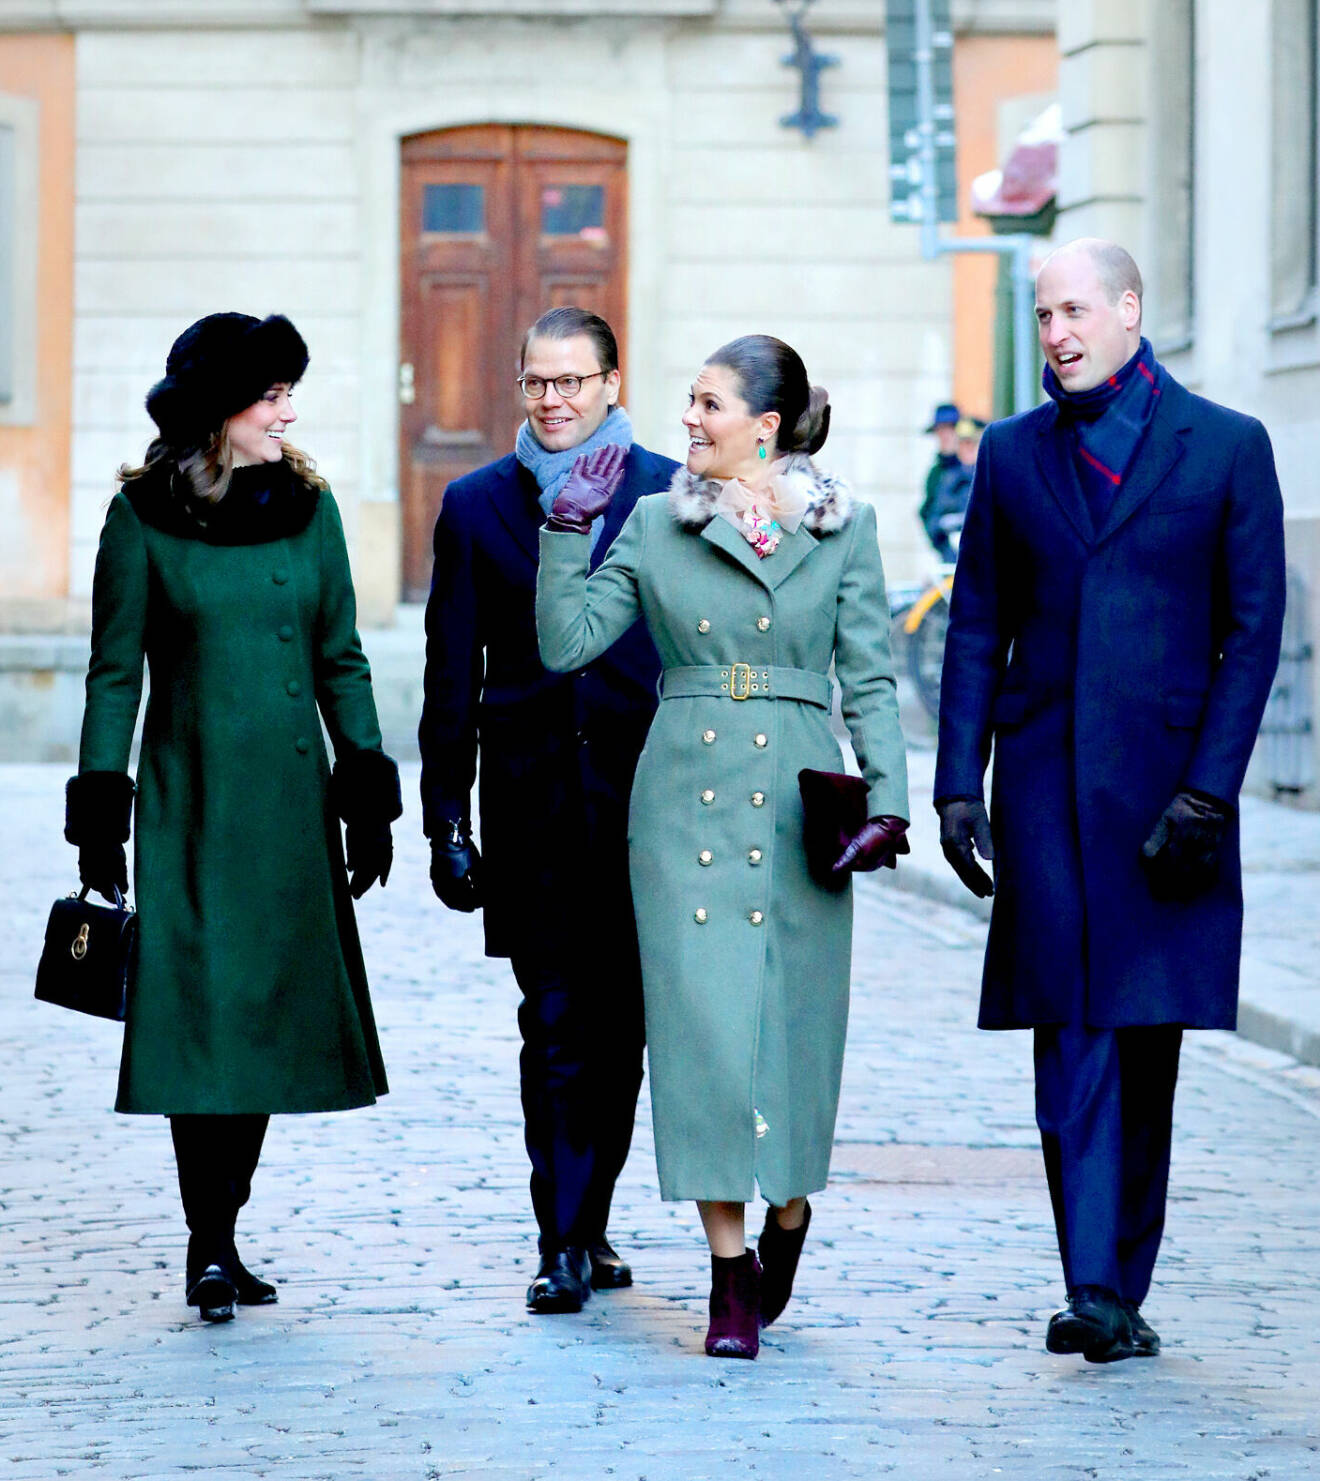 Prins William och Kate – Prinsessan av Wales – med kronprinsessan Victoria och prins Daniel i Stockholm 2018